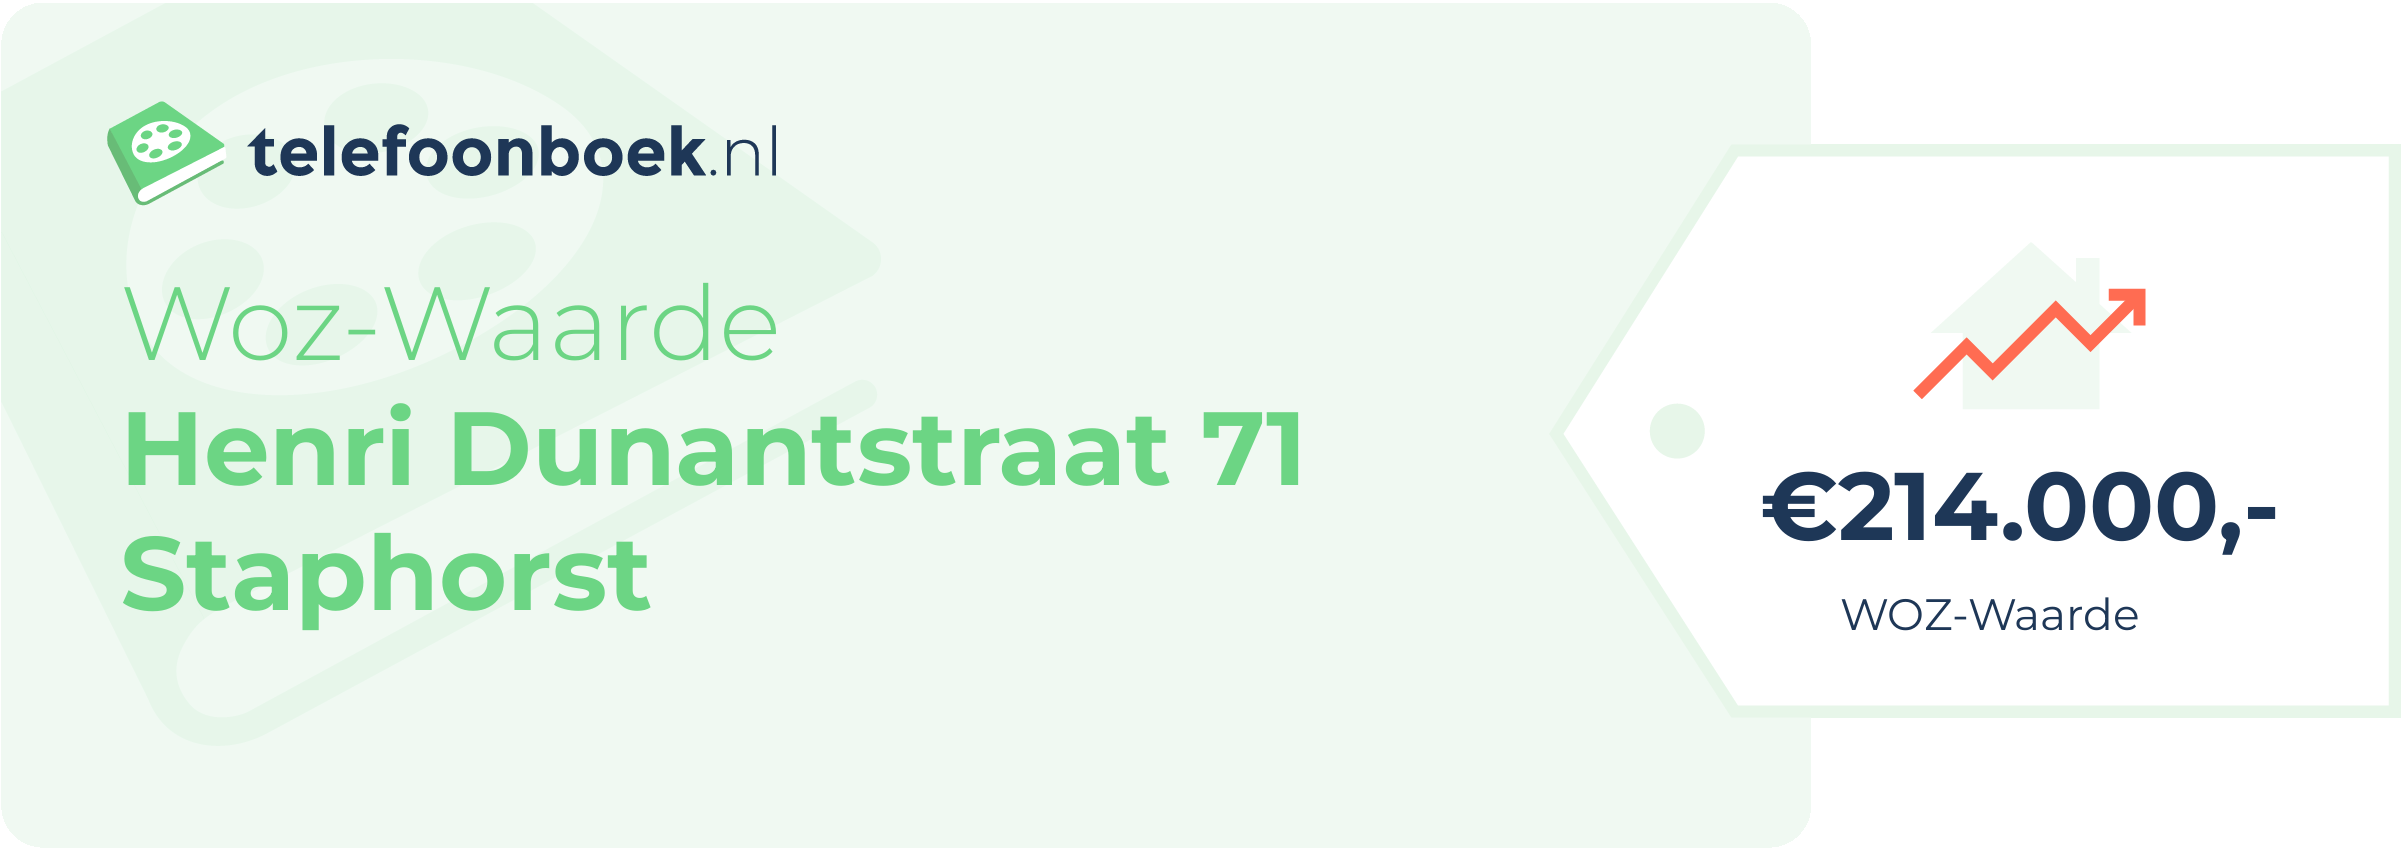 WOZ-waarde Henri Dunantstraat 71 Staphorst